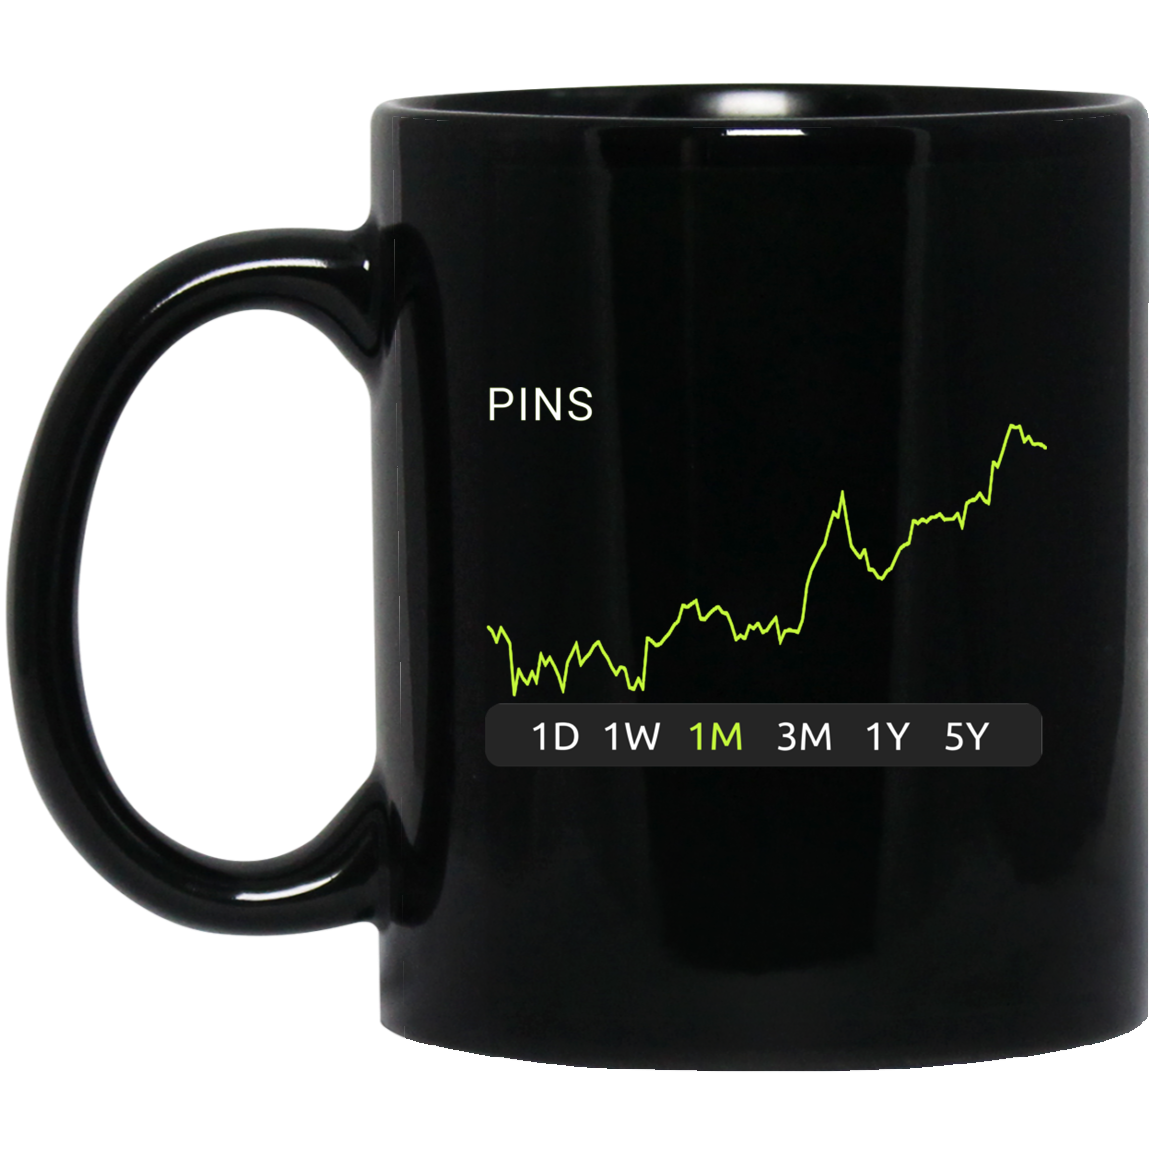 PINS Stock 1m Mug